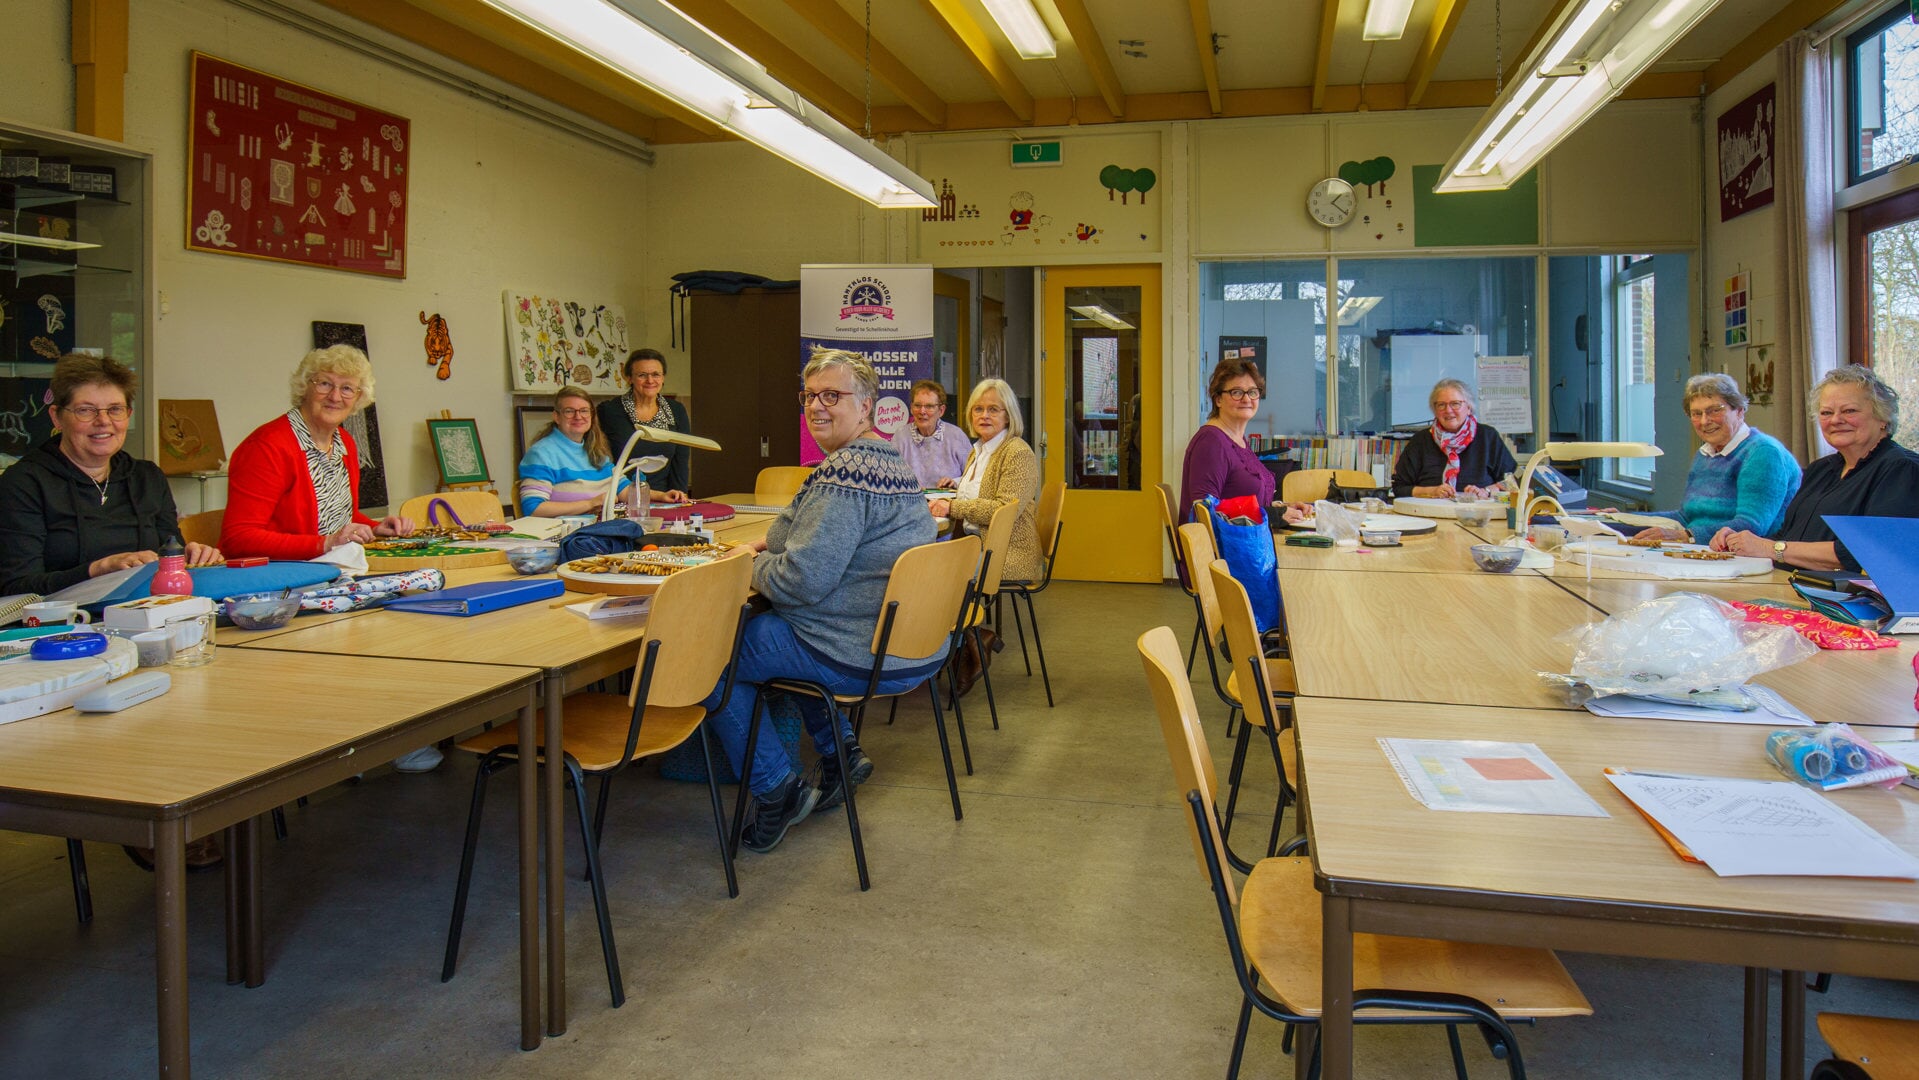 De kantklosschool heeft 85 leerlingen uit heel Nederland. "Je hoeft echt geen kantexpert te zijn om hier als leerling binnen te komen. Iedereen kan het leren."